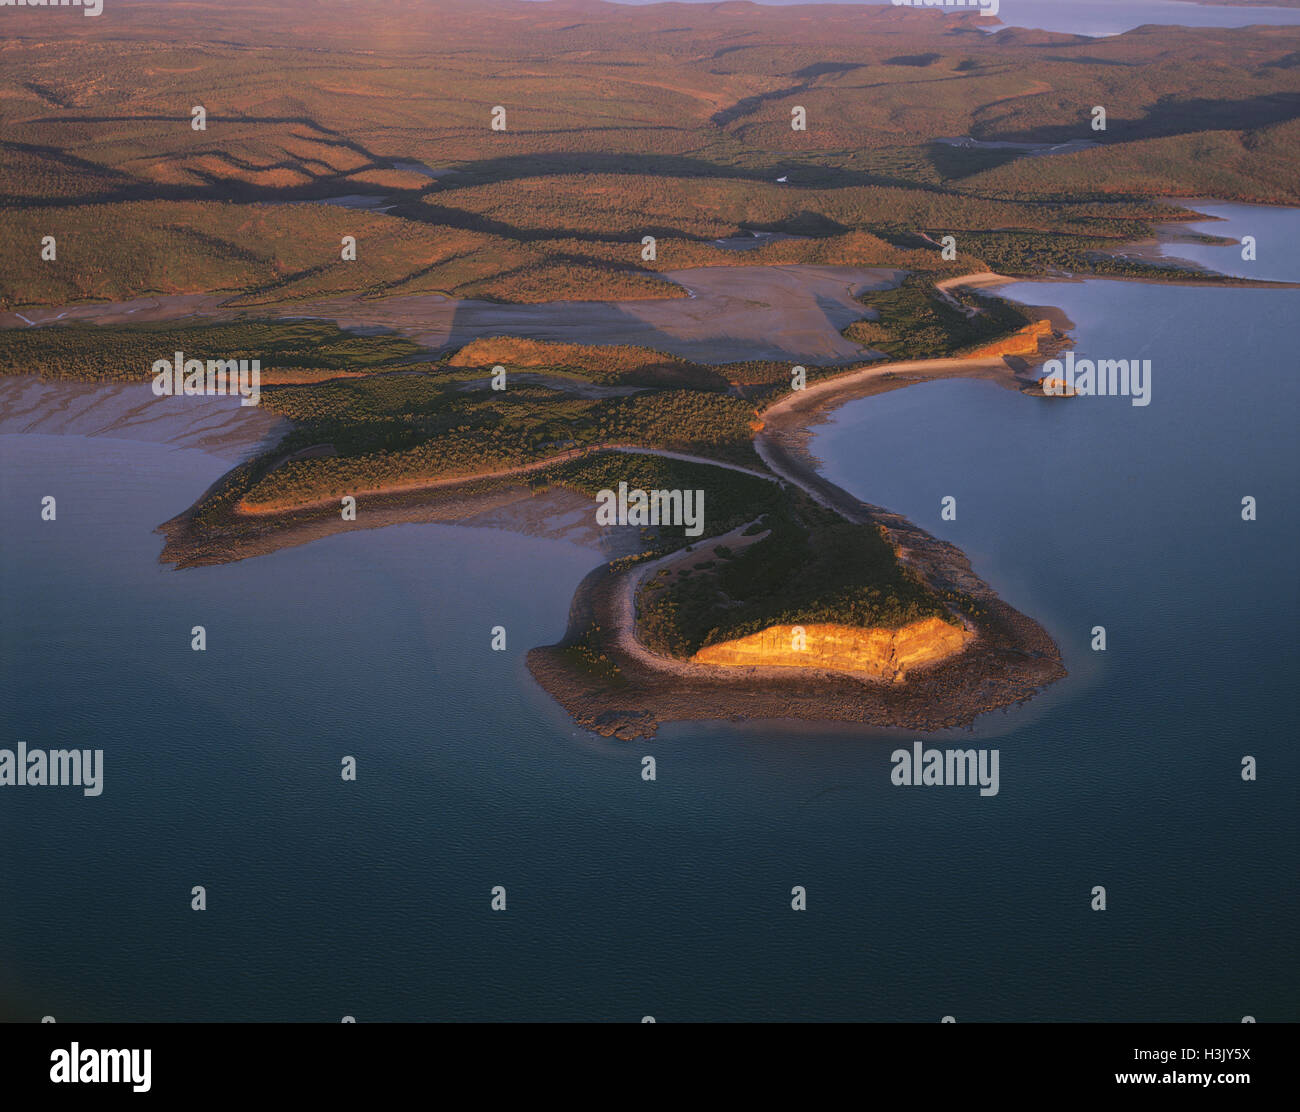 St George Basin, Luftbild mit Mangroven gesäumten Ufer; ein Salzwasser krokodil Lebensraum. Stockfoto